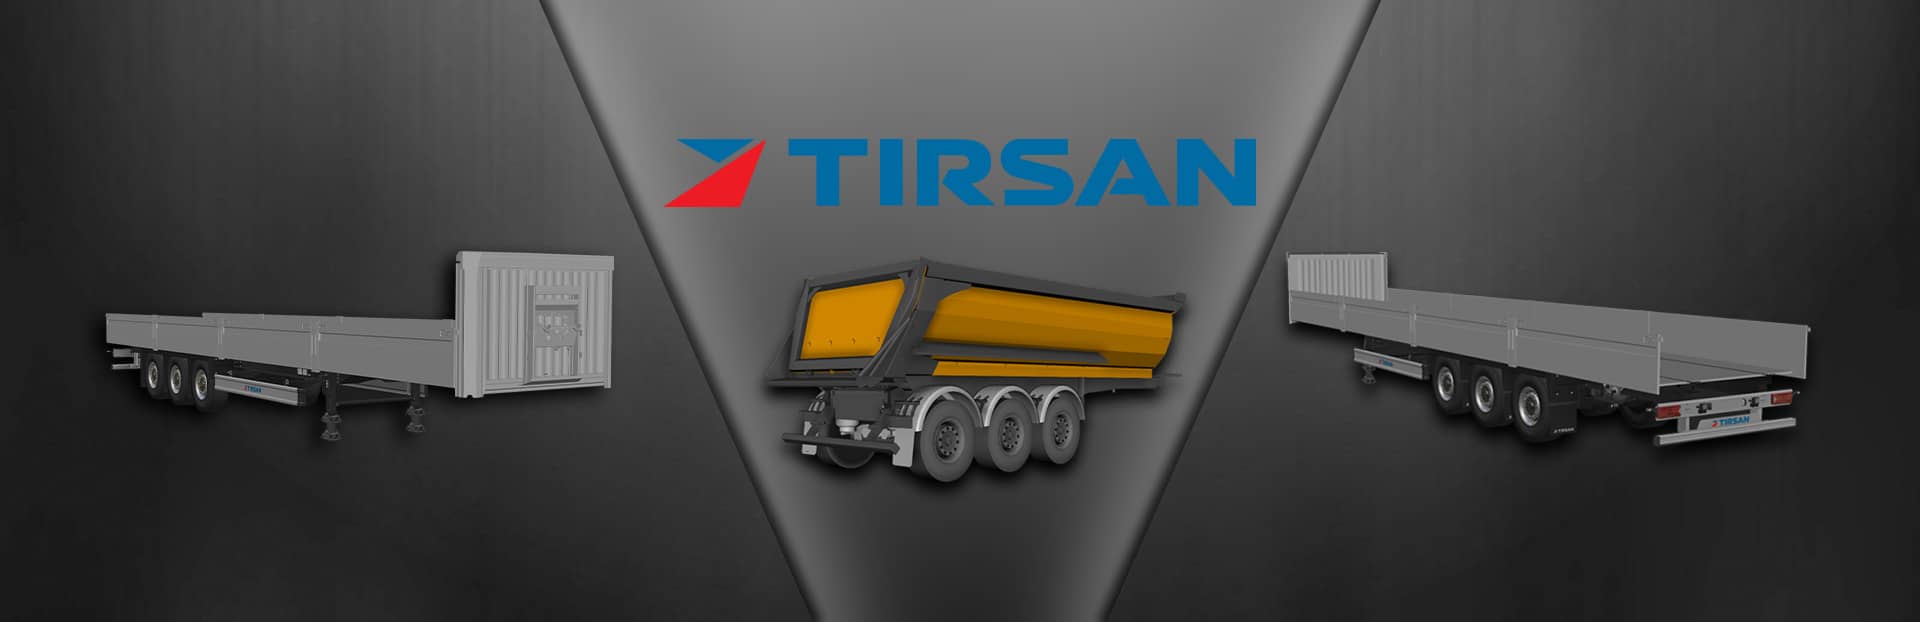 Euro Truck Simulator 2 - značka Tirsan